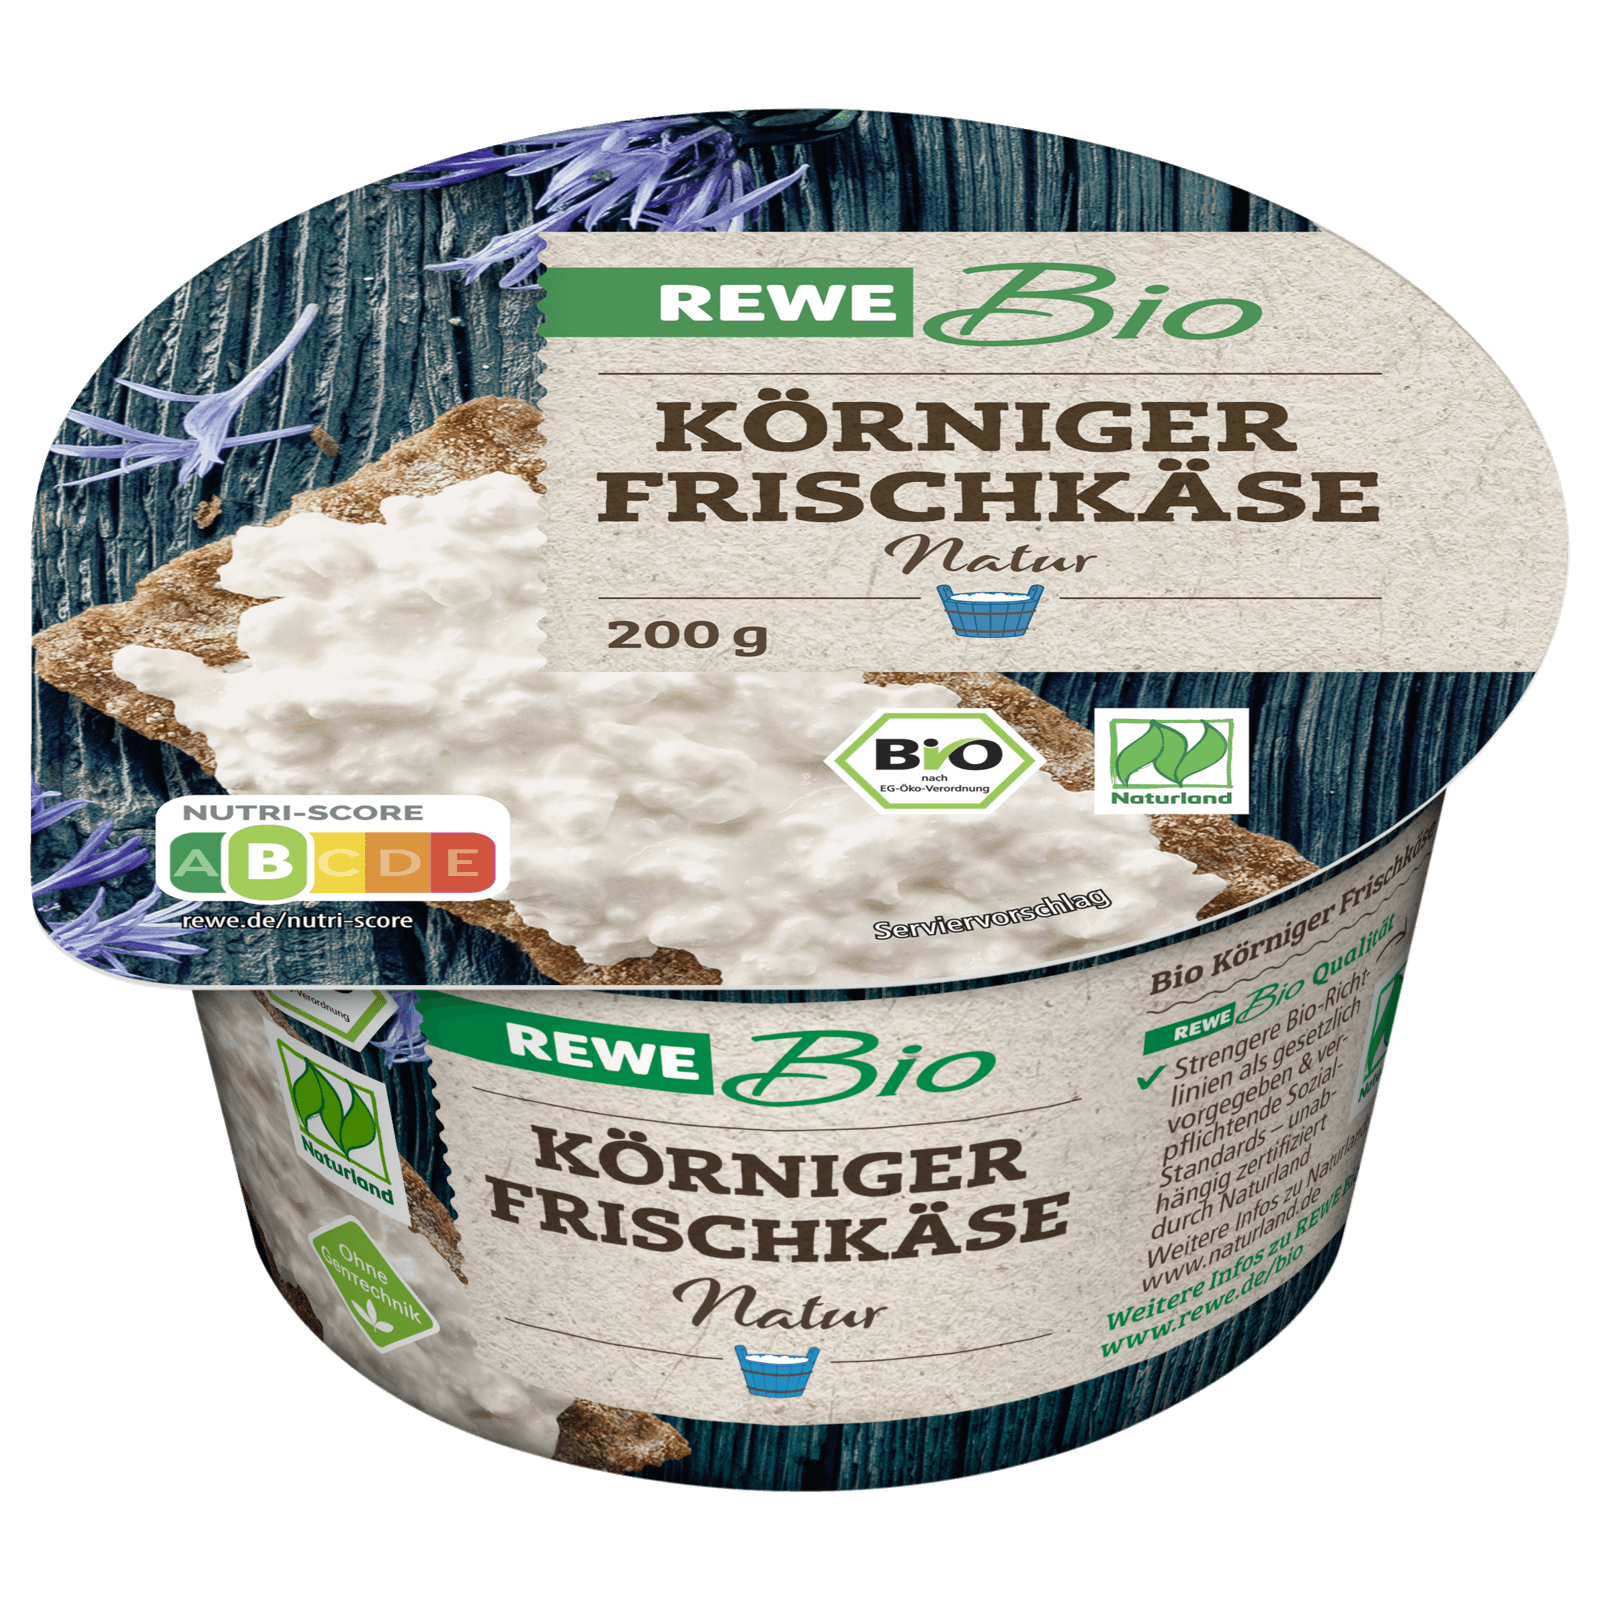 REWE Bio Körniger Frischkäse 200g bestellen! REWE bei online